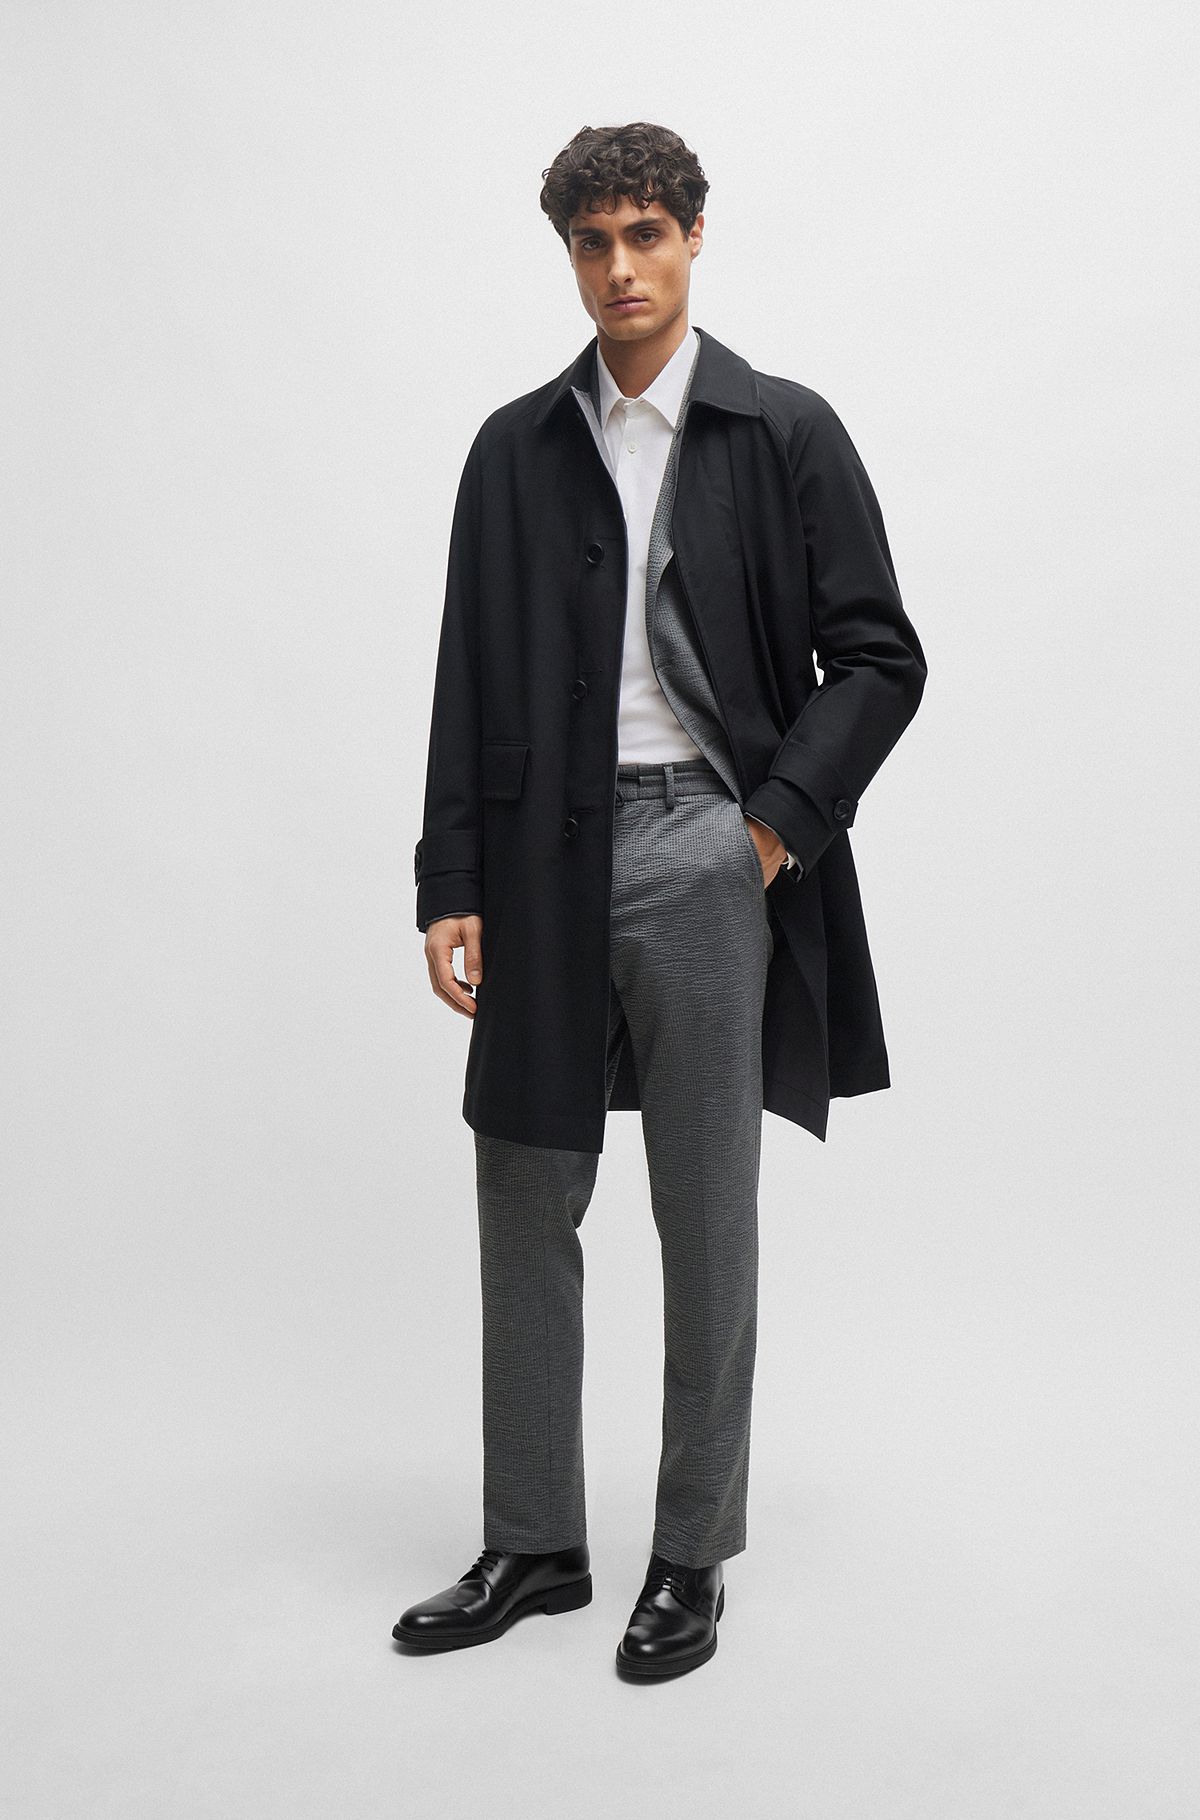 HUGO BOSS | Men's Jackets and Coats